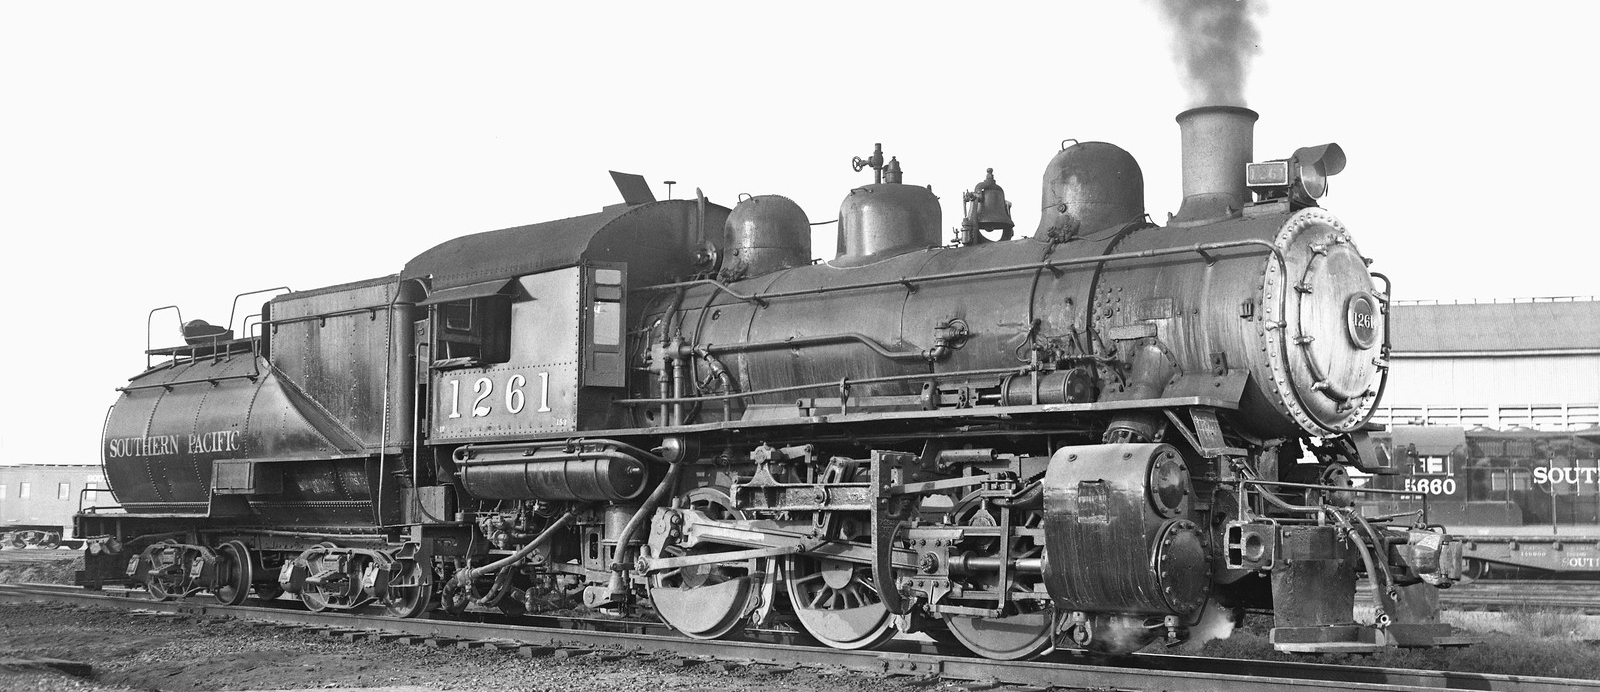 No. 1261 in April 1956 in Fresno, California